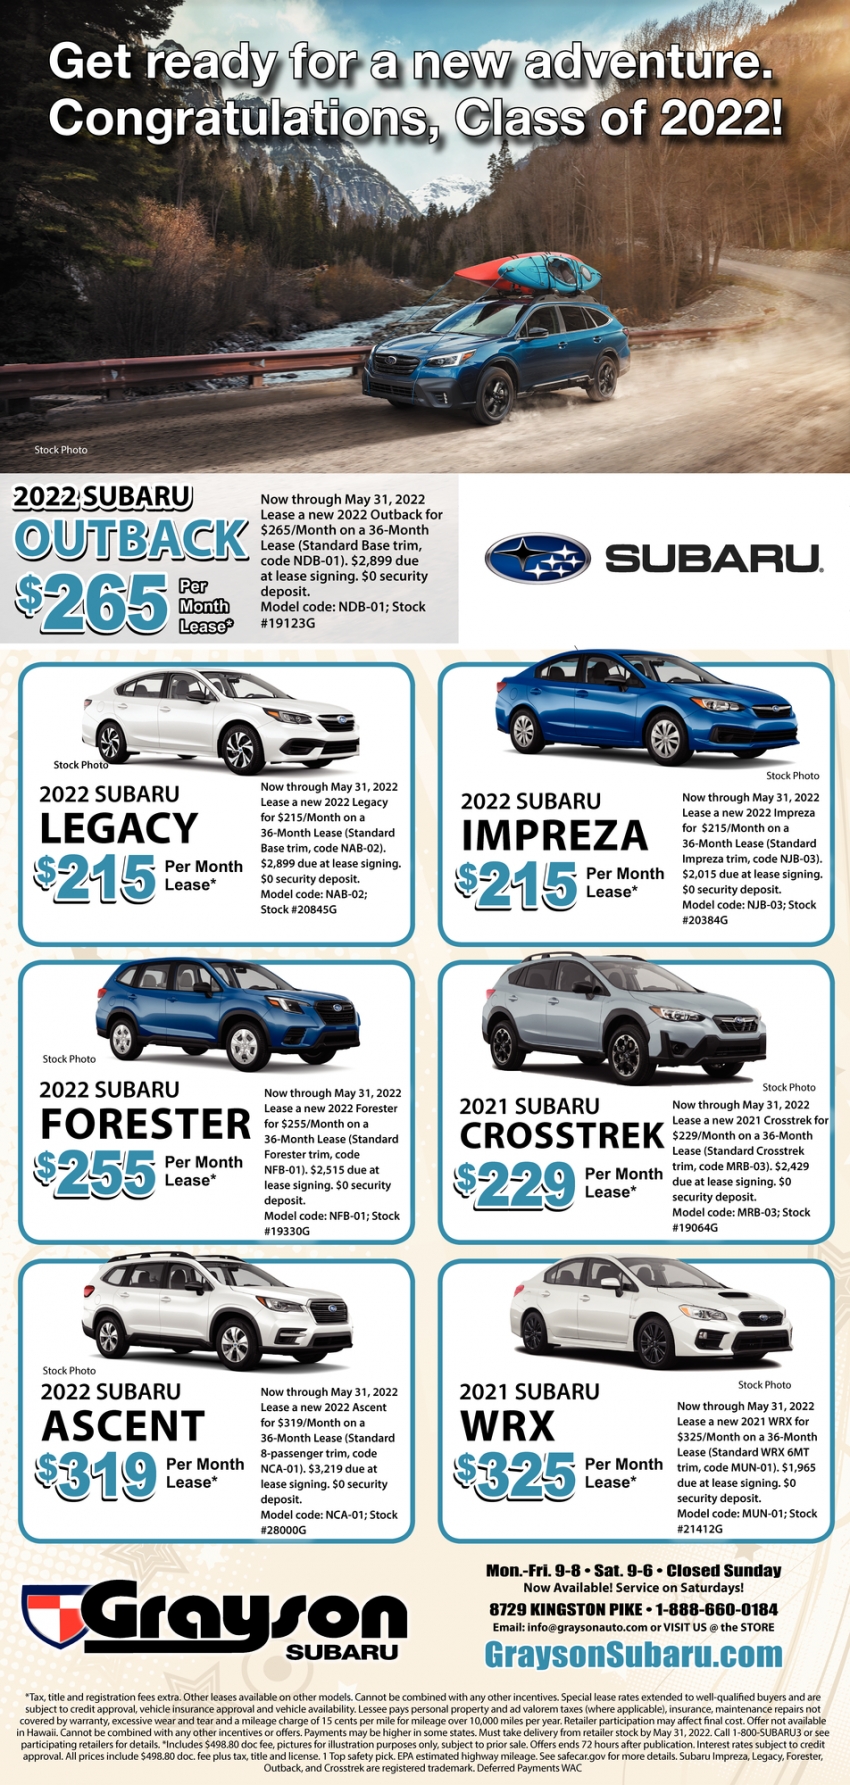 2022 Subaru Outback $265